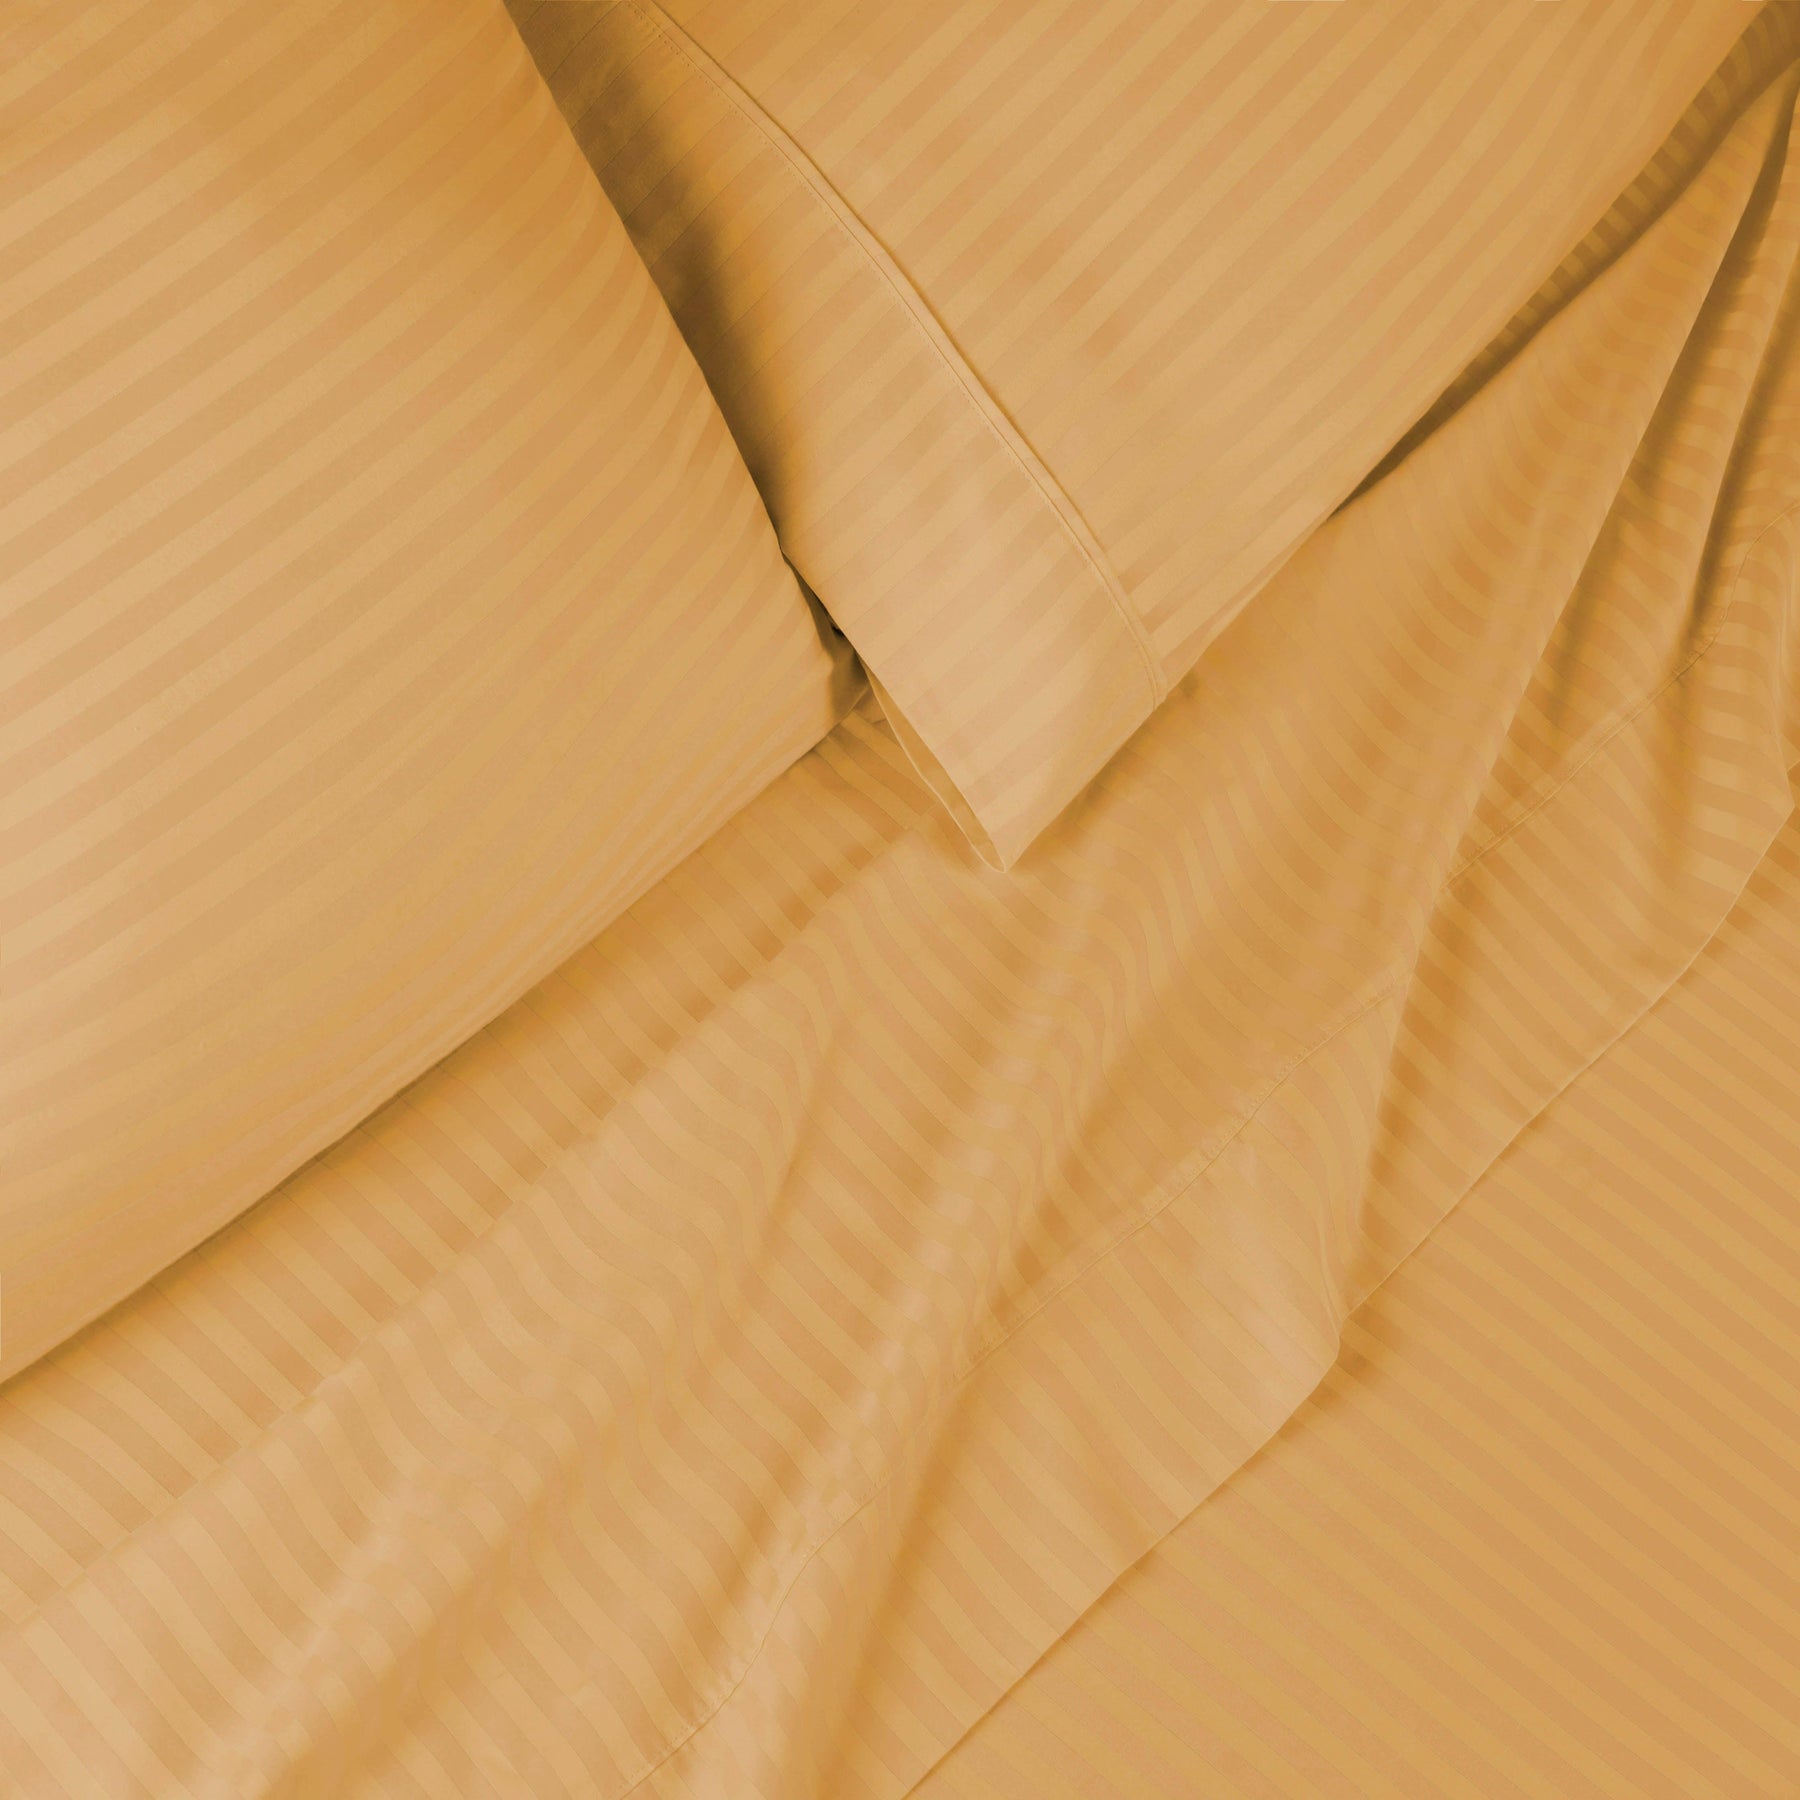 Superior 300 Thread Count Premium Egyptian Cotton Stripe Sheet Set - Gold